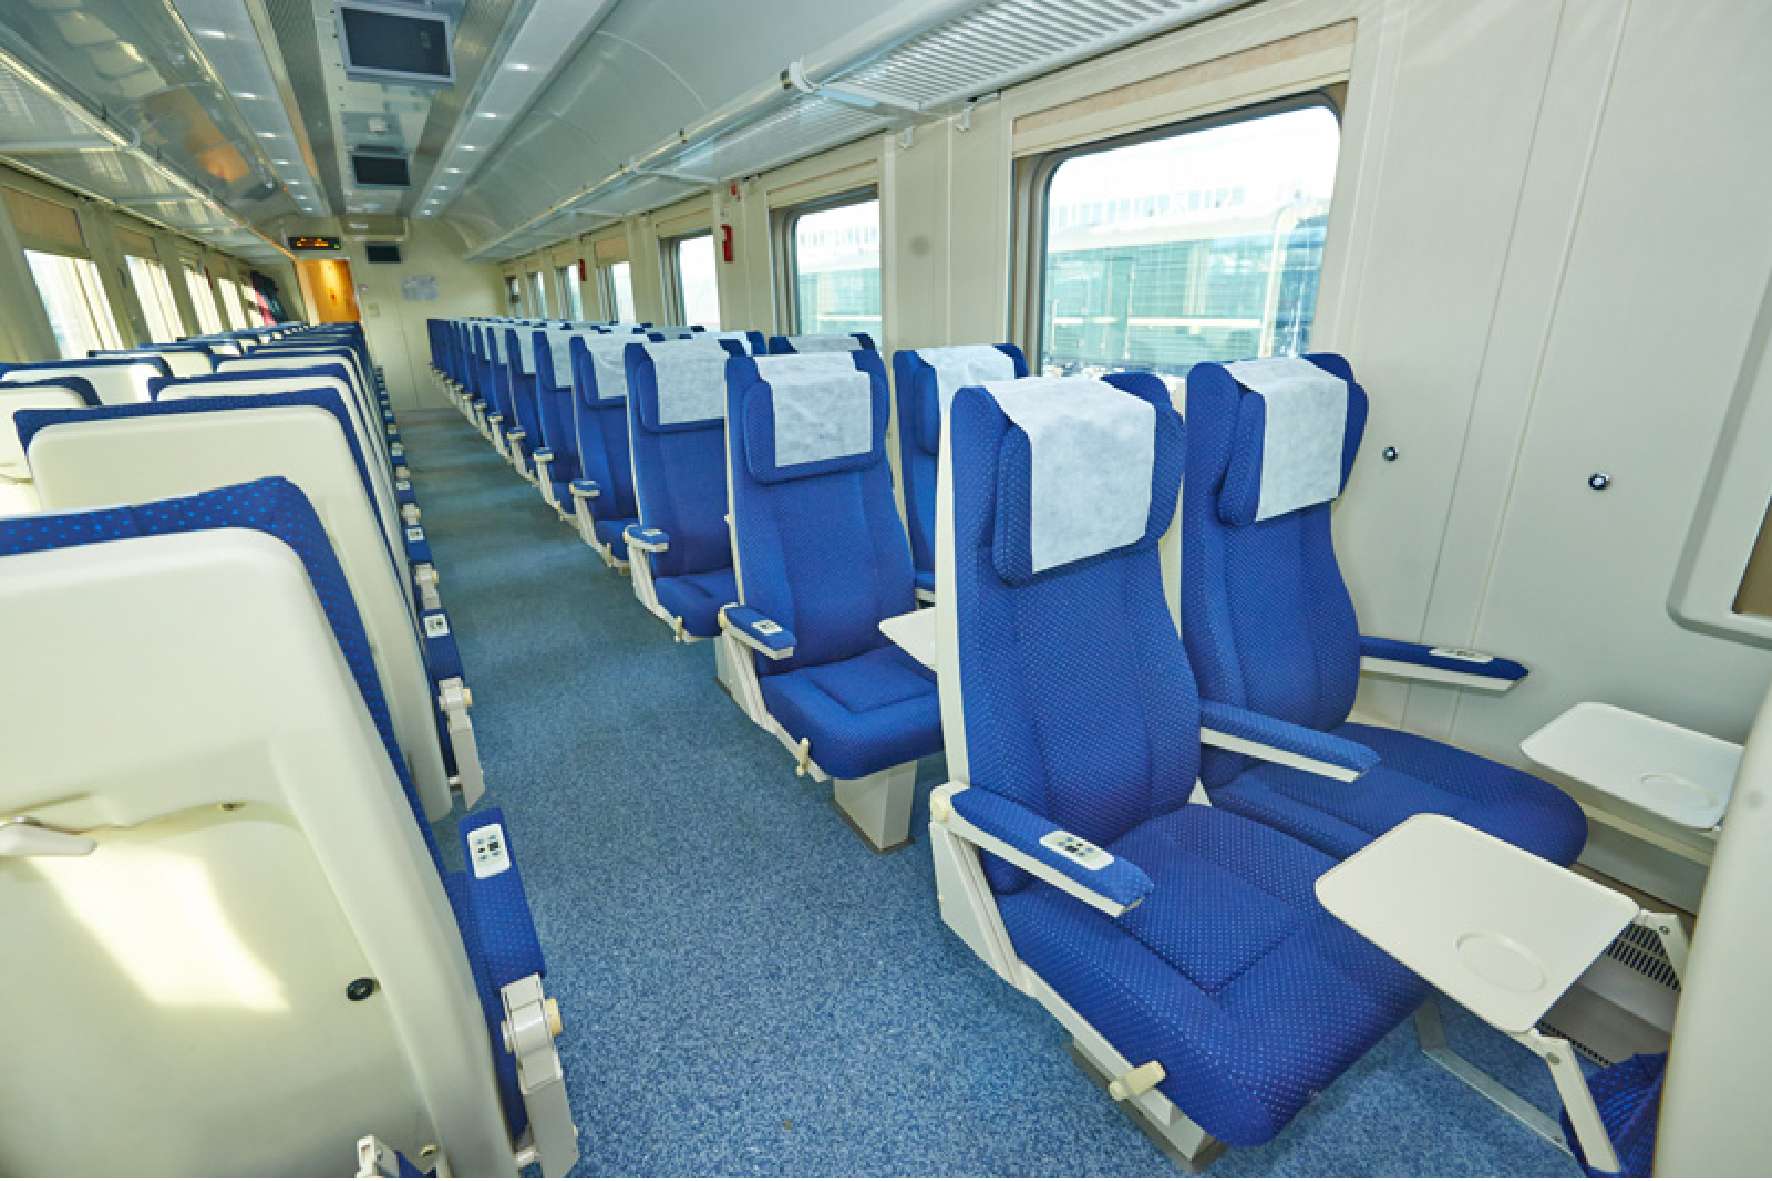 сидячий вагон в поезде белгород санкт петербург